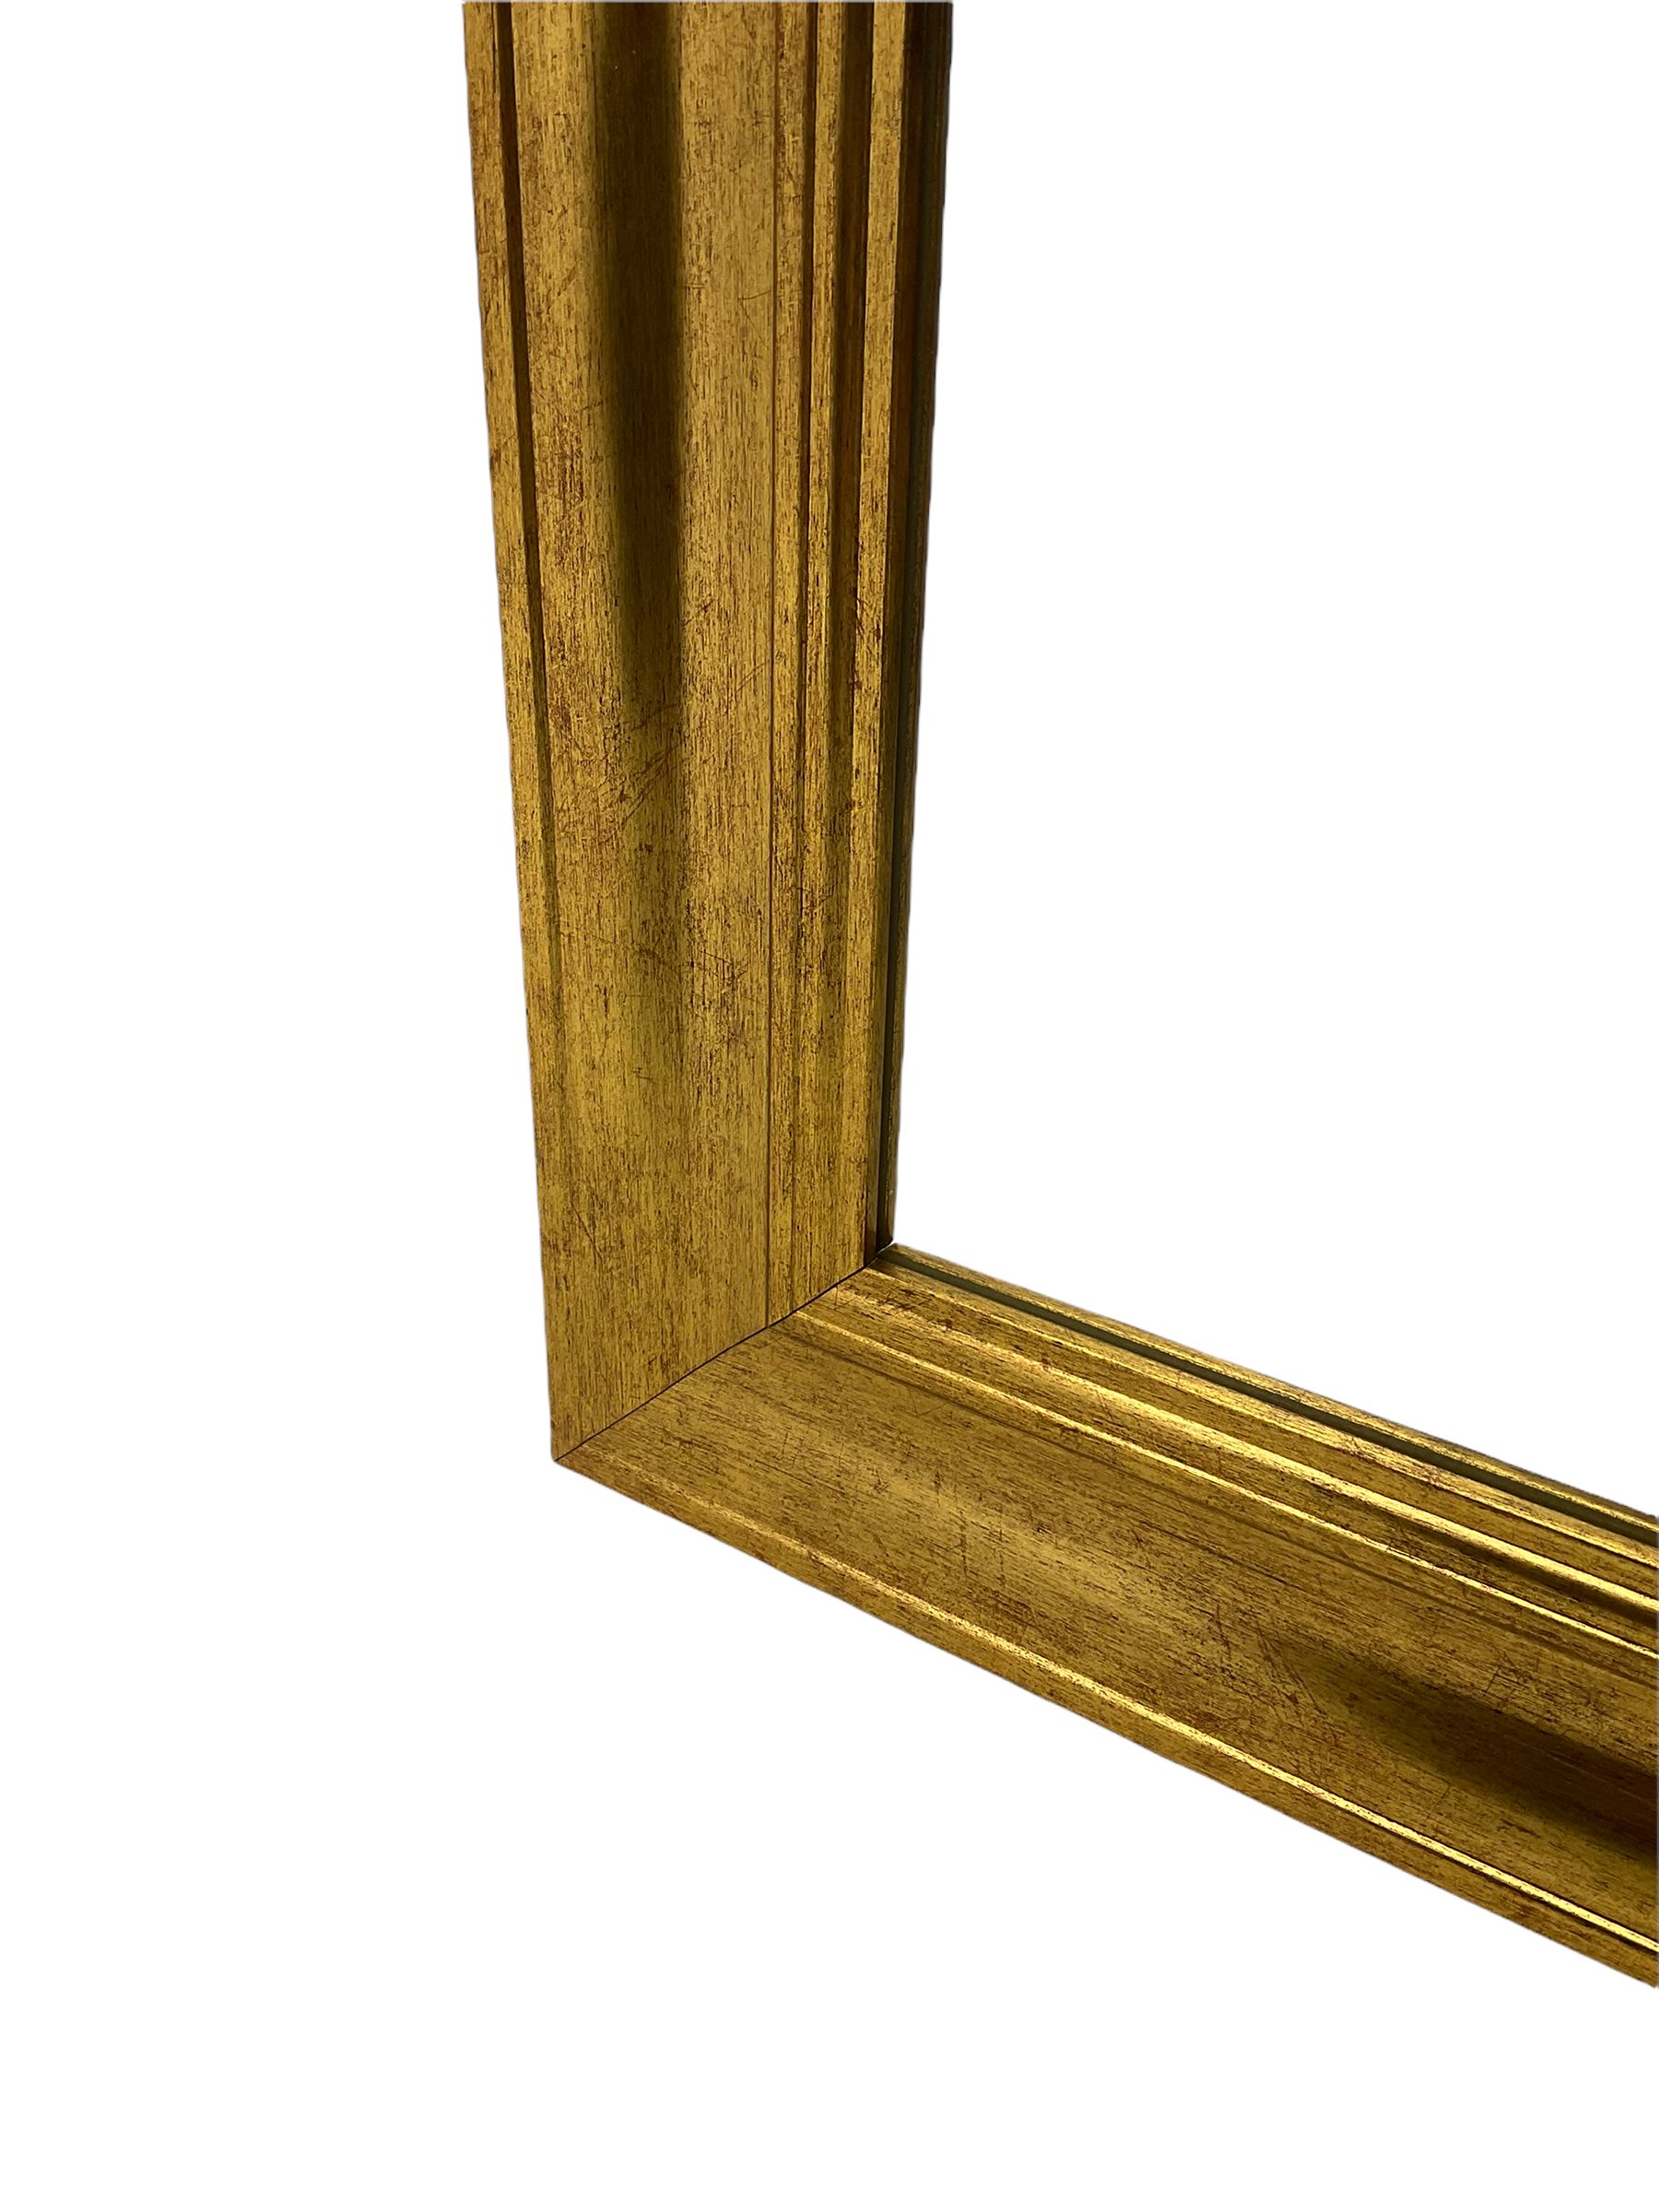 Bevelled mirror in moulded gilt frame - Image 3 of 3